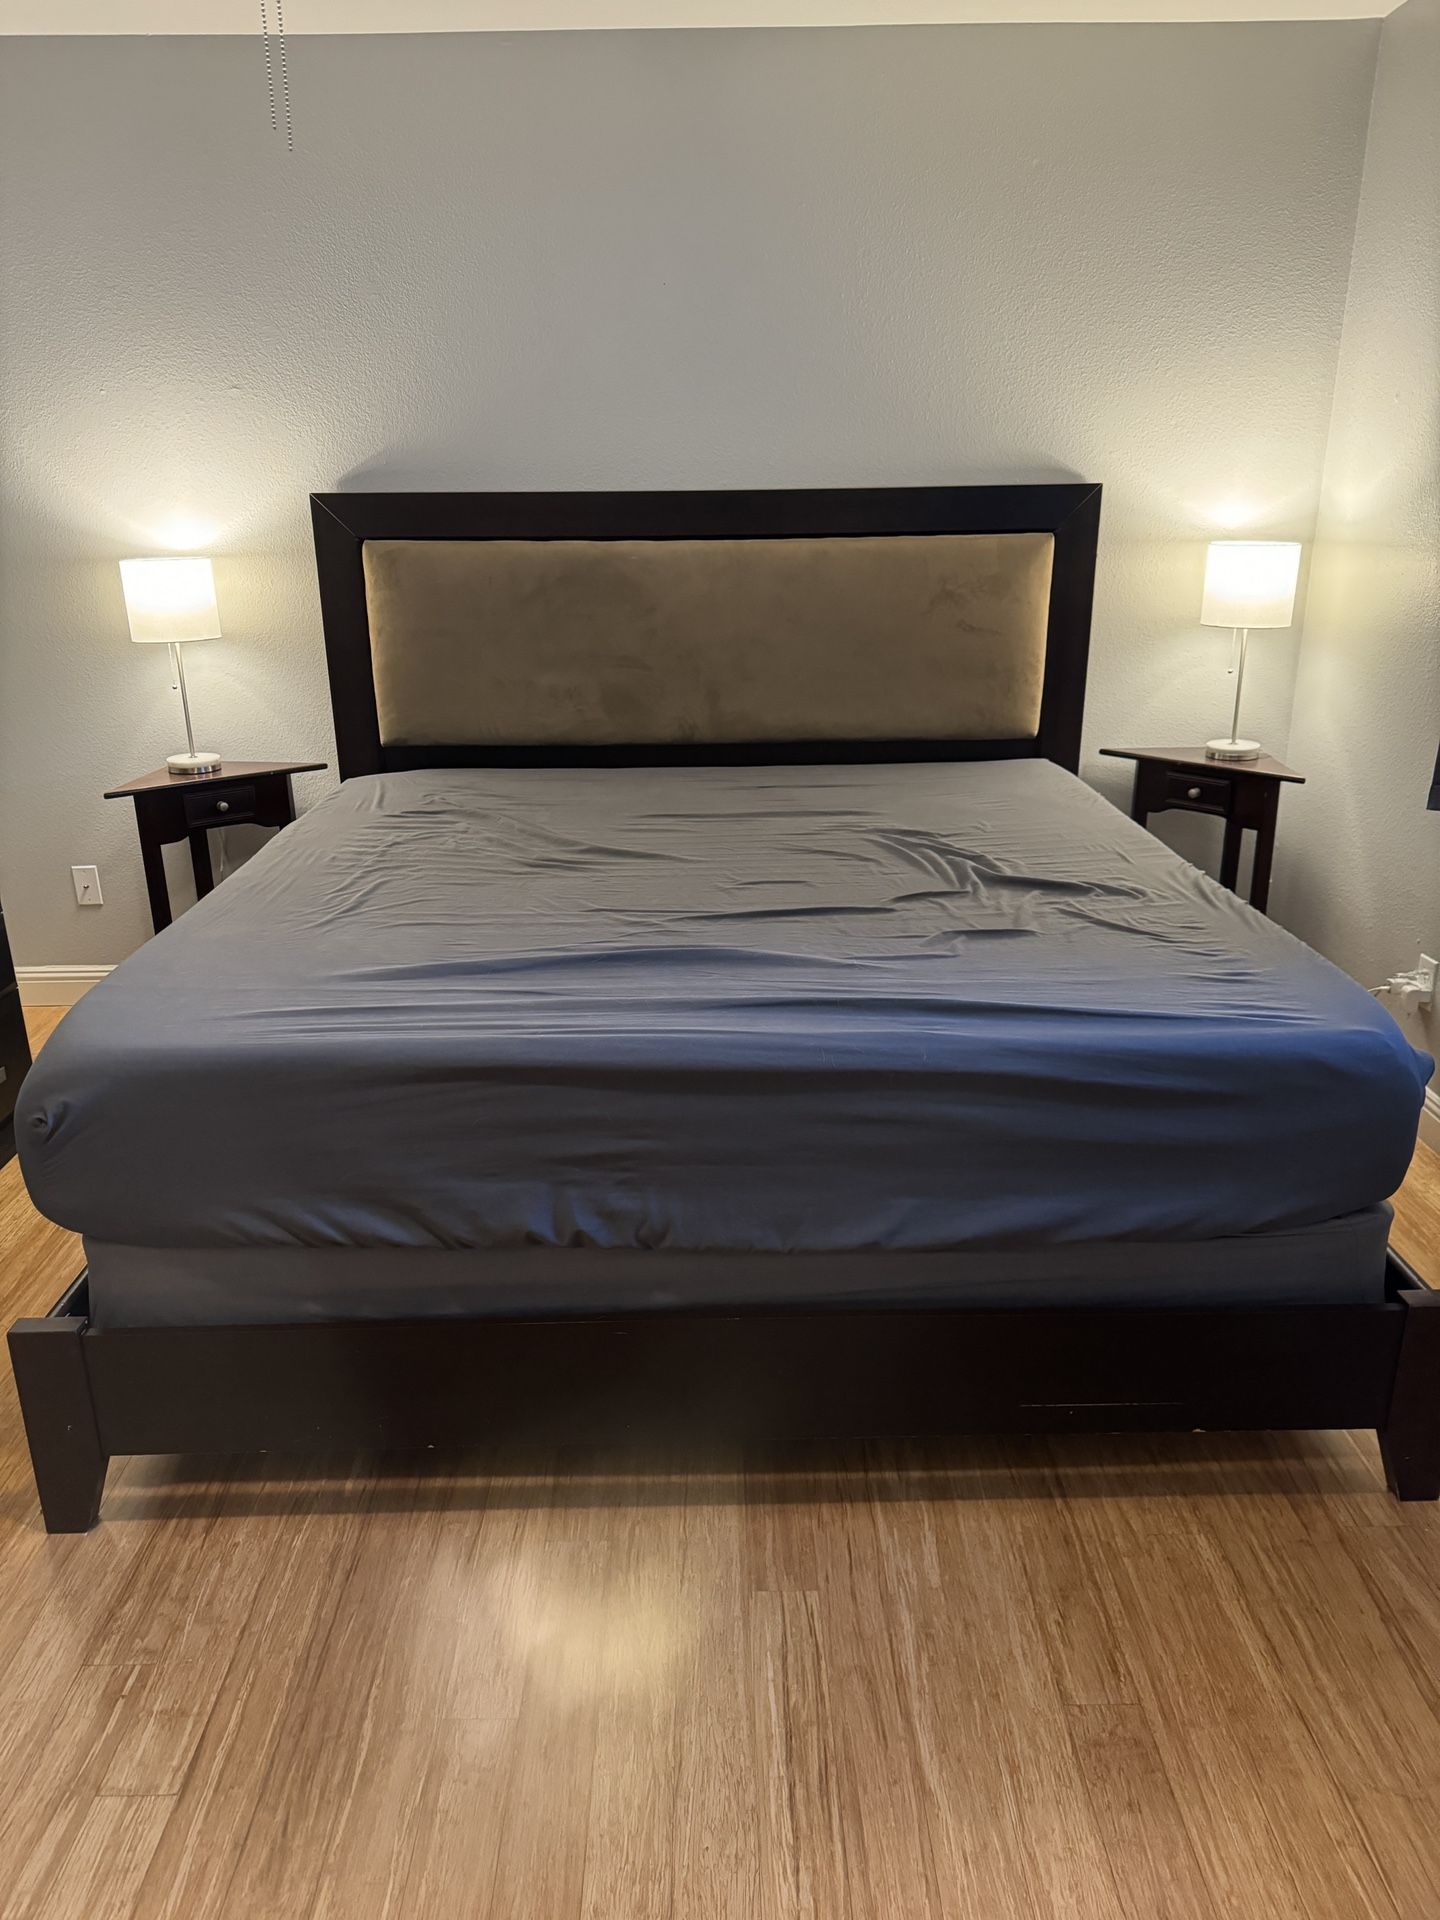 King Bedroom Suite: Frame/Dresser/Night Stands